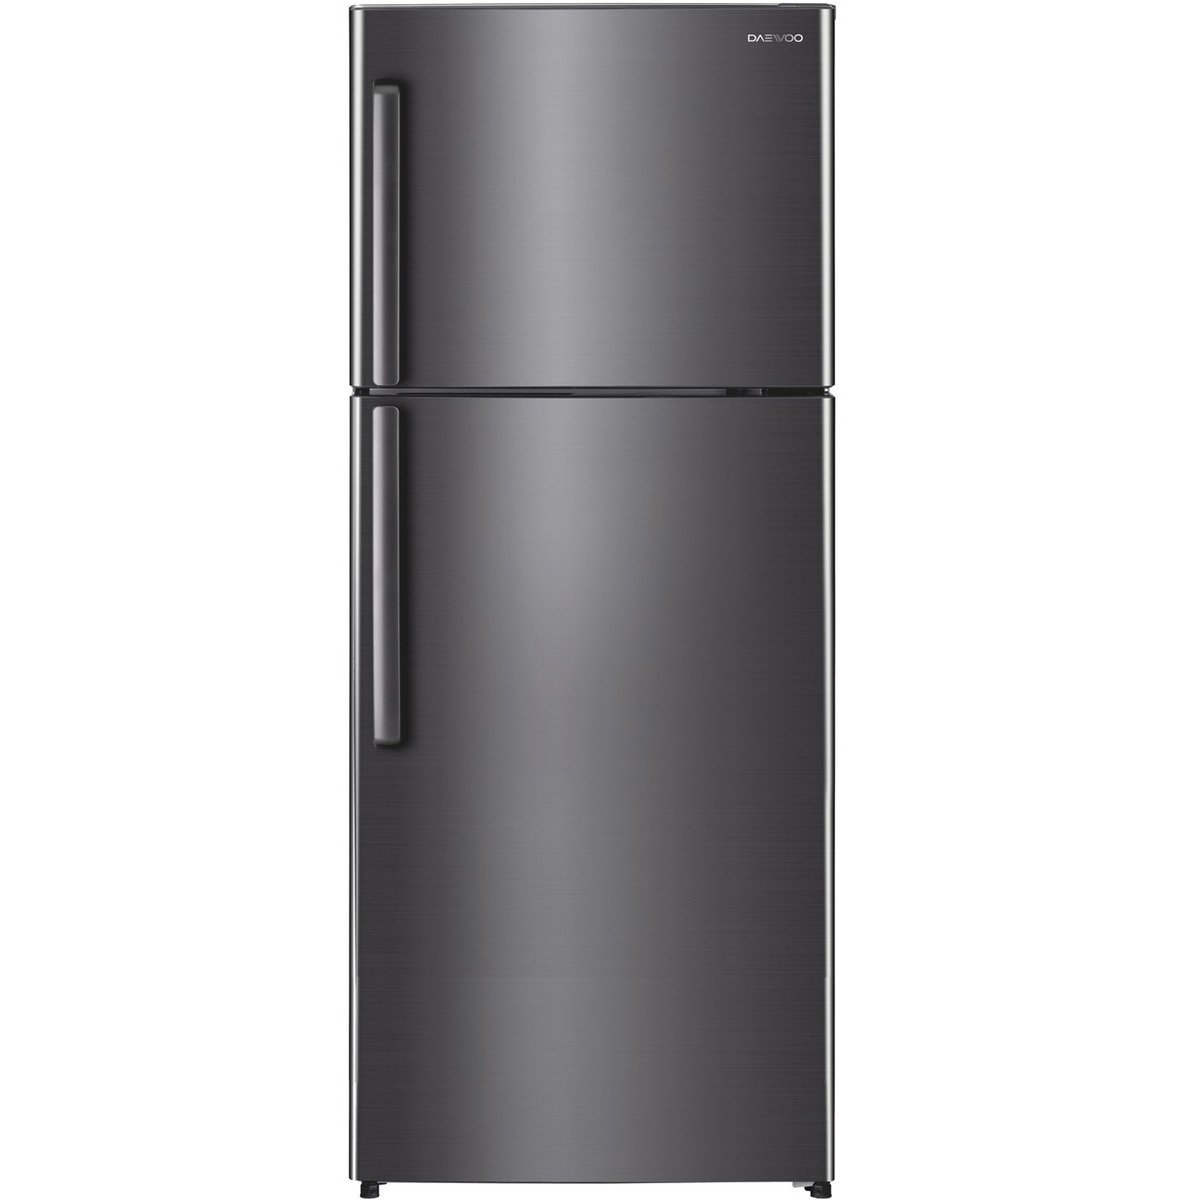 Daewoo Double Door Refrigerator FN675S3EI 600Ltr